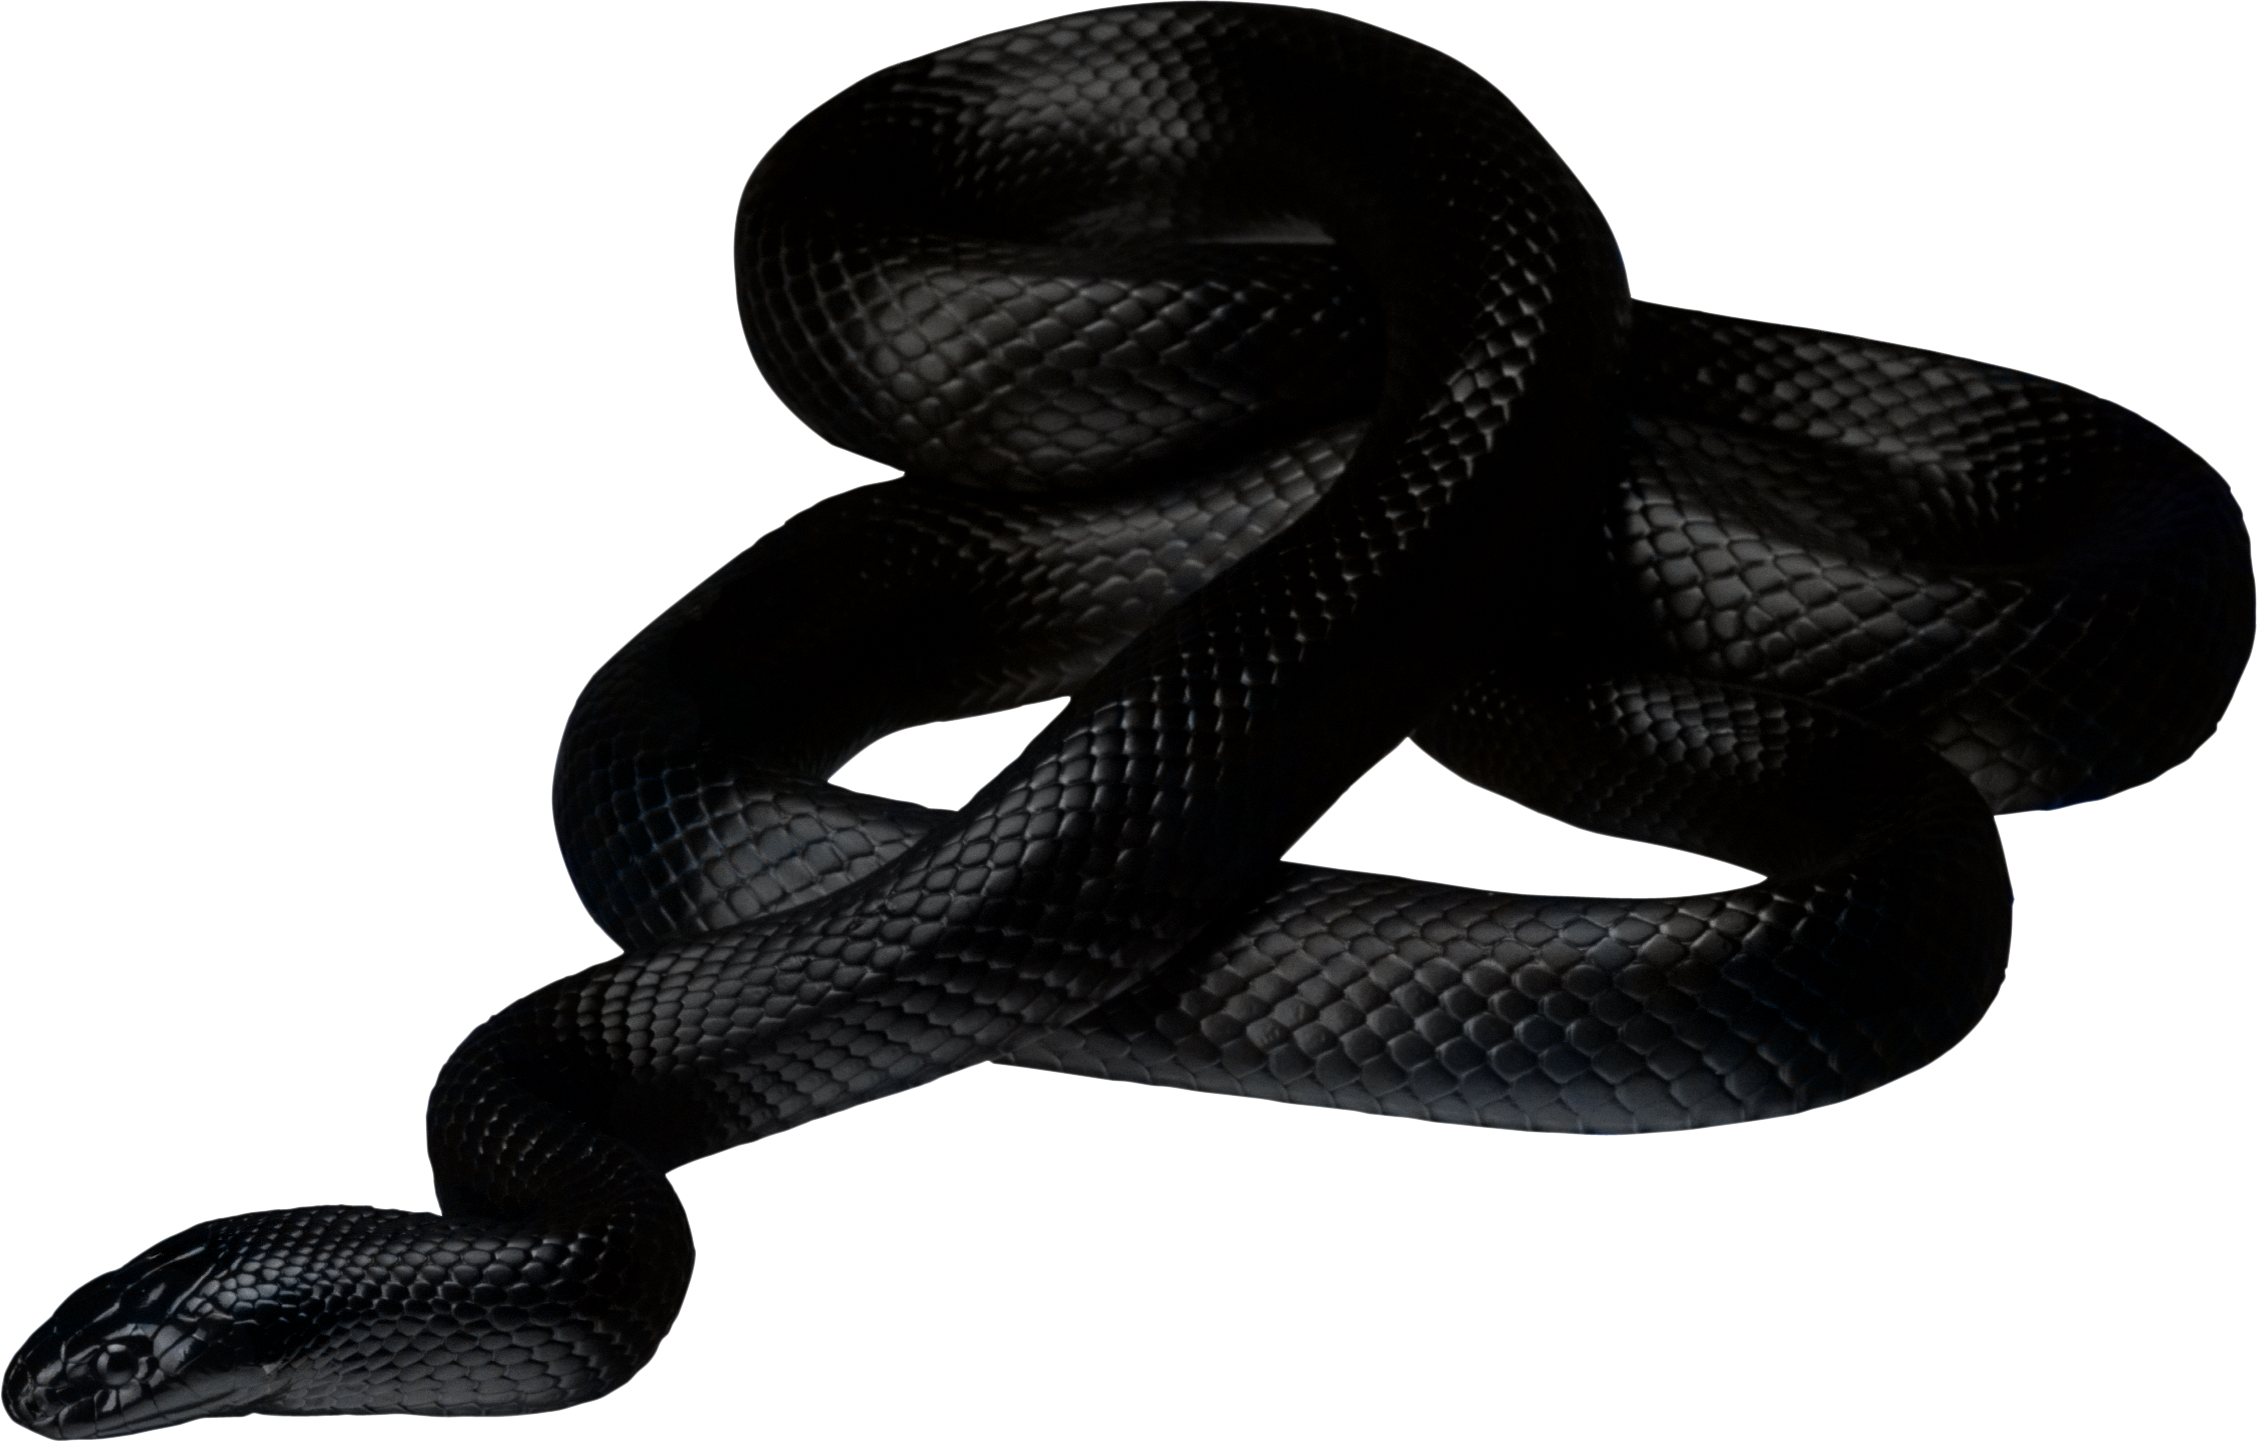 Long Imagen transparente PNG de serpiente